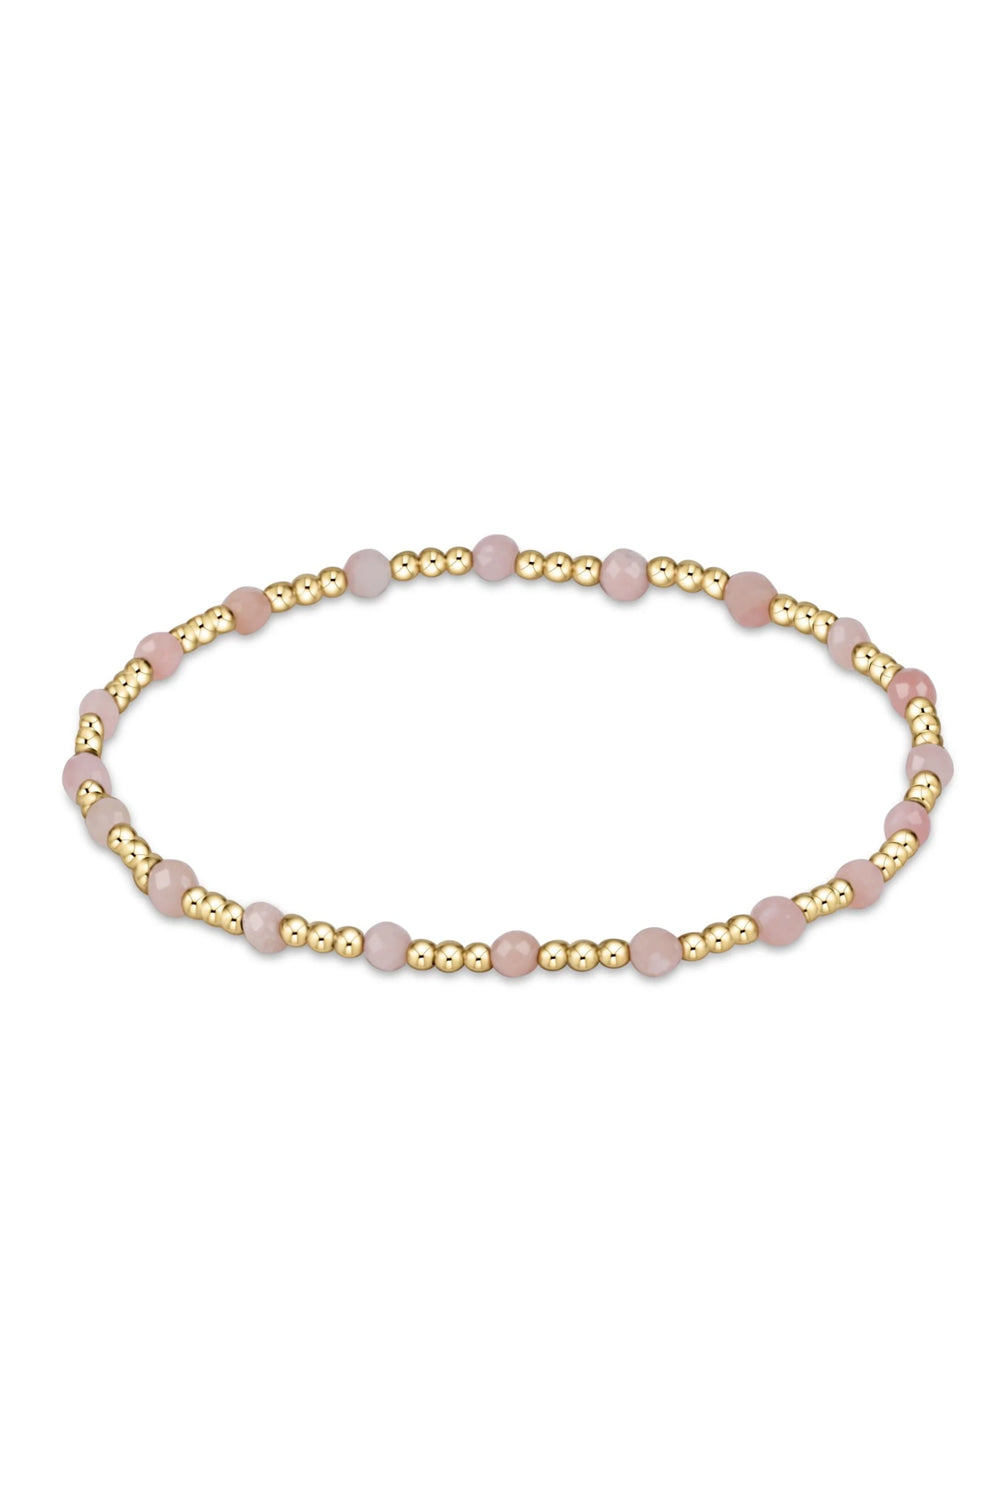 enewton: Gemstone Gold Sincerity Pattern 3mm Bracelet - Pink Opal | Makk Fashions